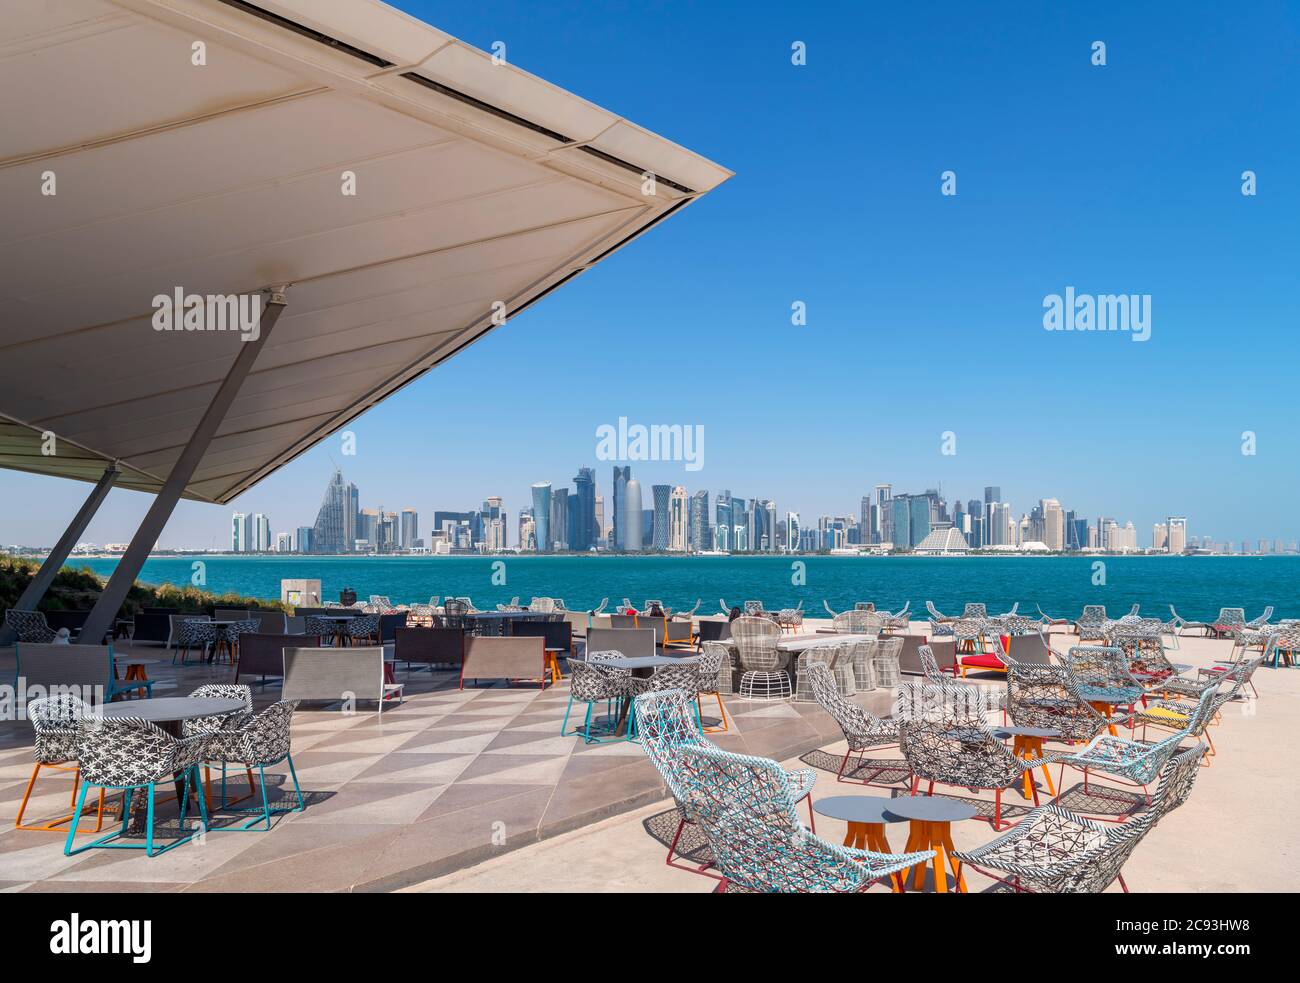 El MIA Park Cafe en el parque MIA con el horizonte del distrito central de negocios de West Bay detrás, Doha, Qatar, Oriente Medio Foto de stock